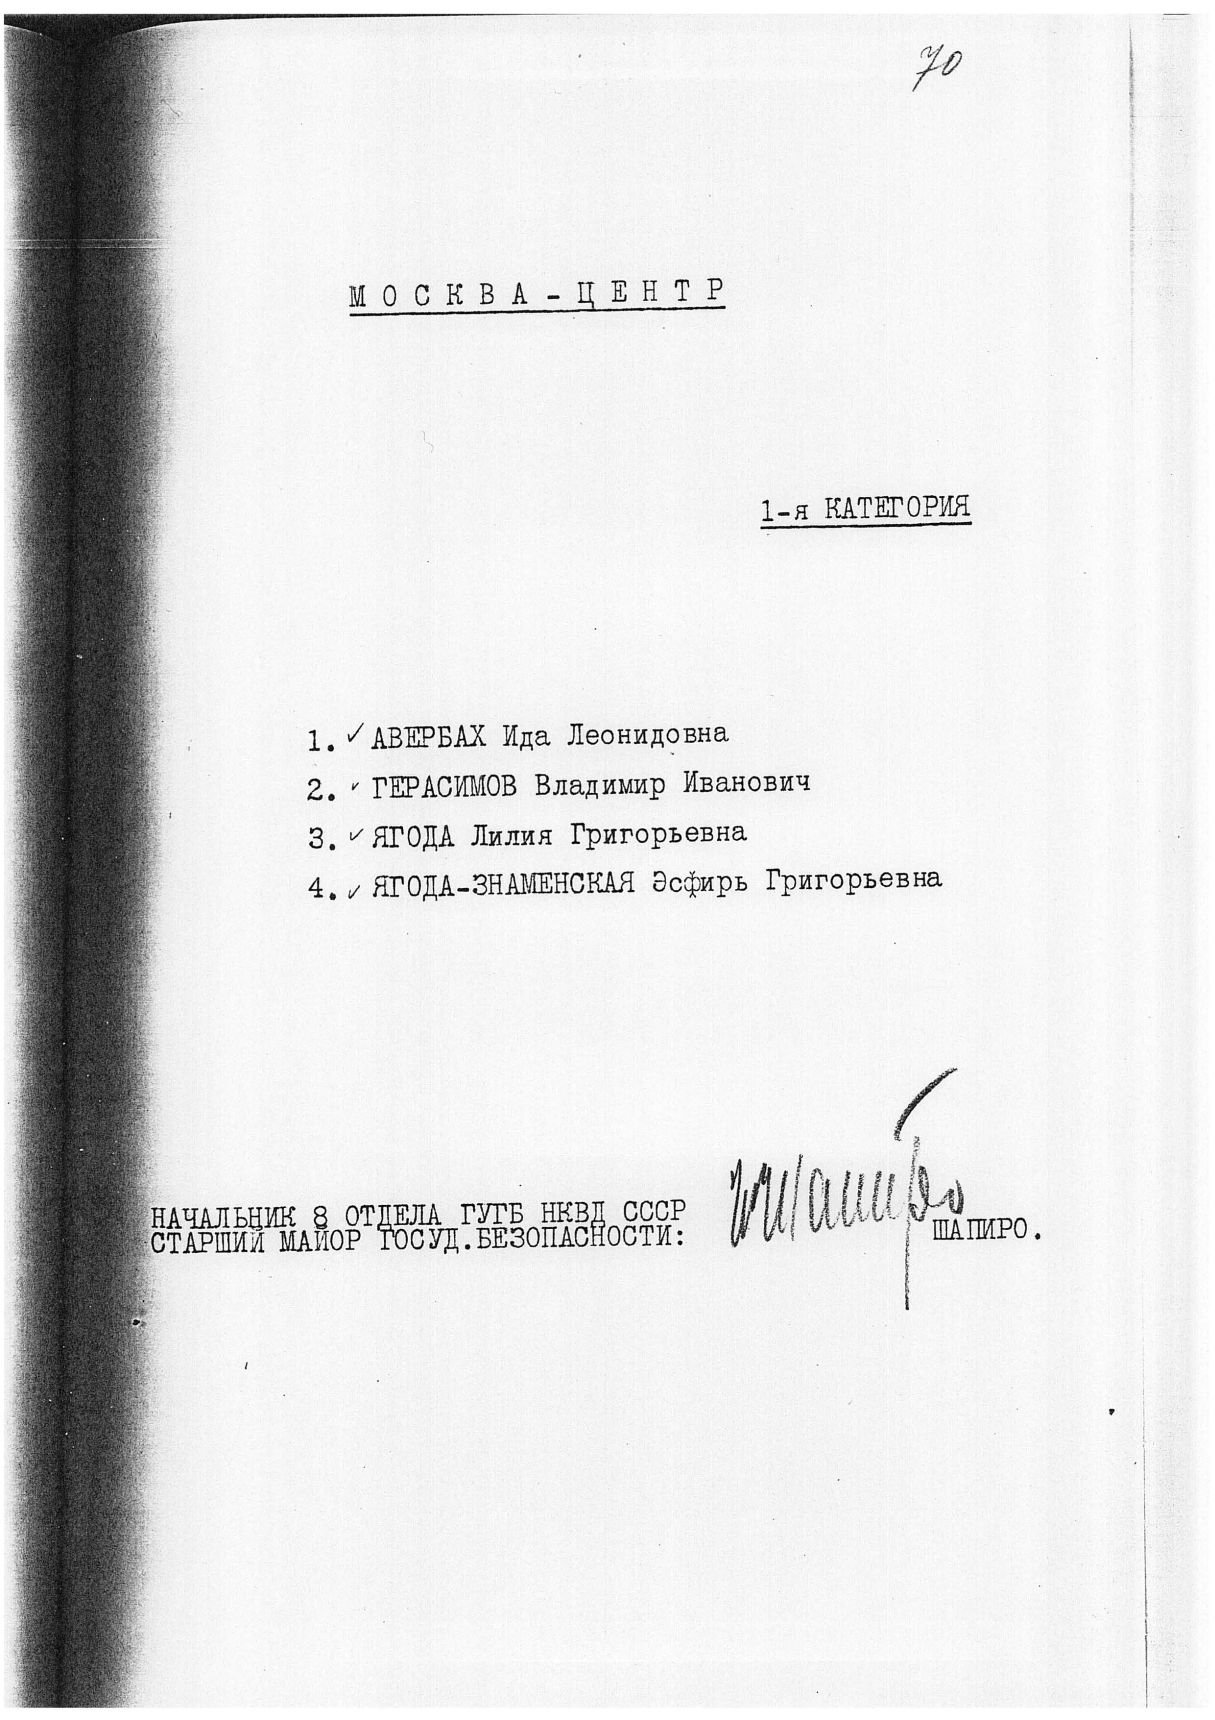 Сталинский расстрельный список в ОП от 10.6.1938 г. (подпись И. И. Шапиро)